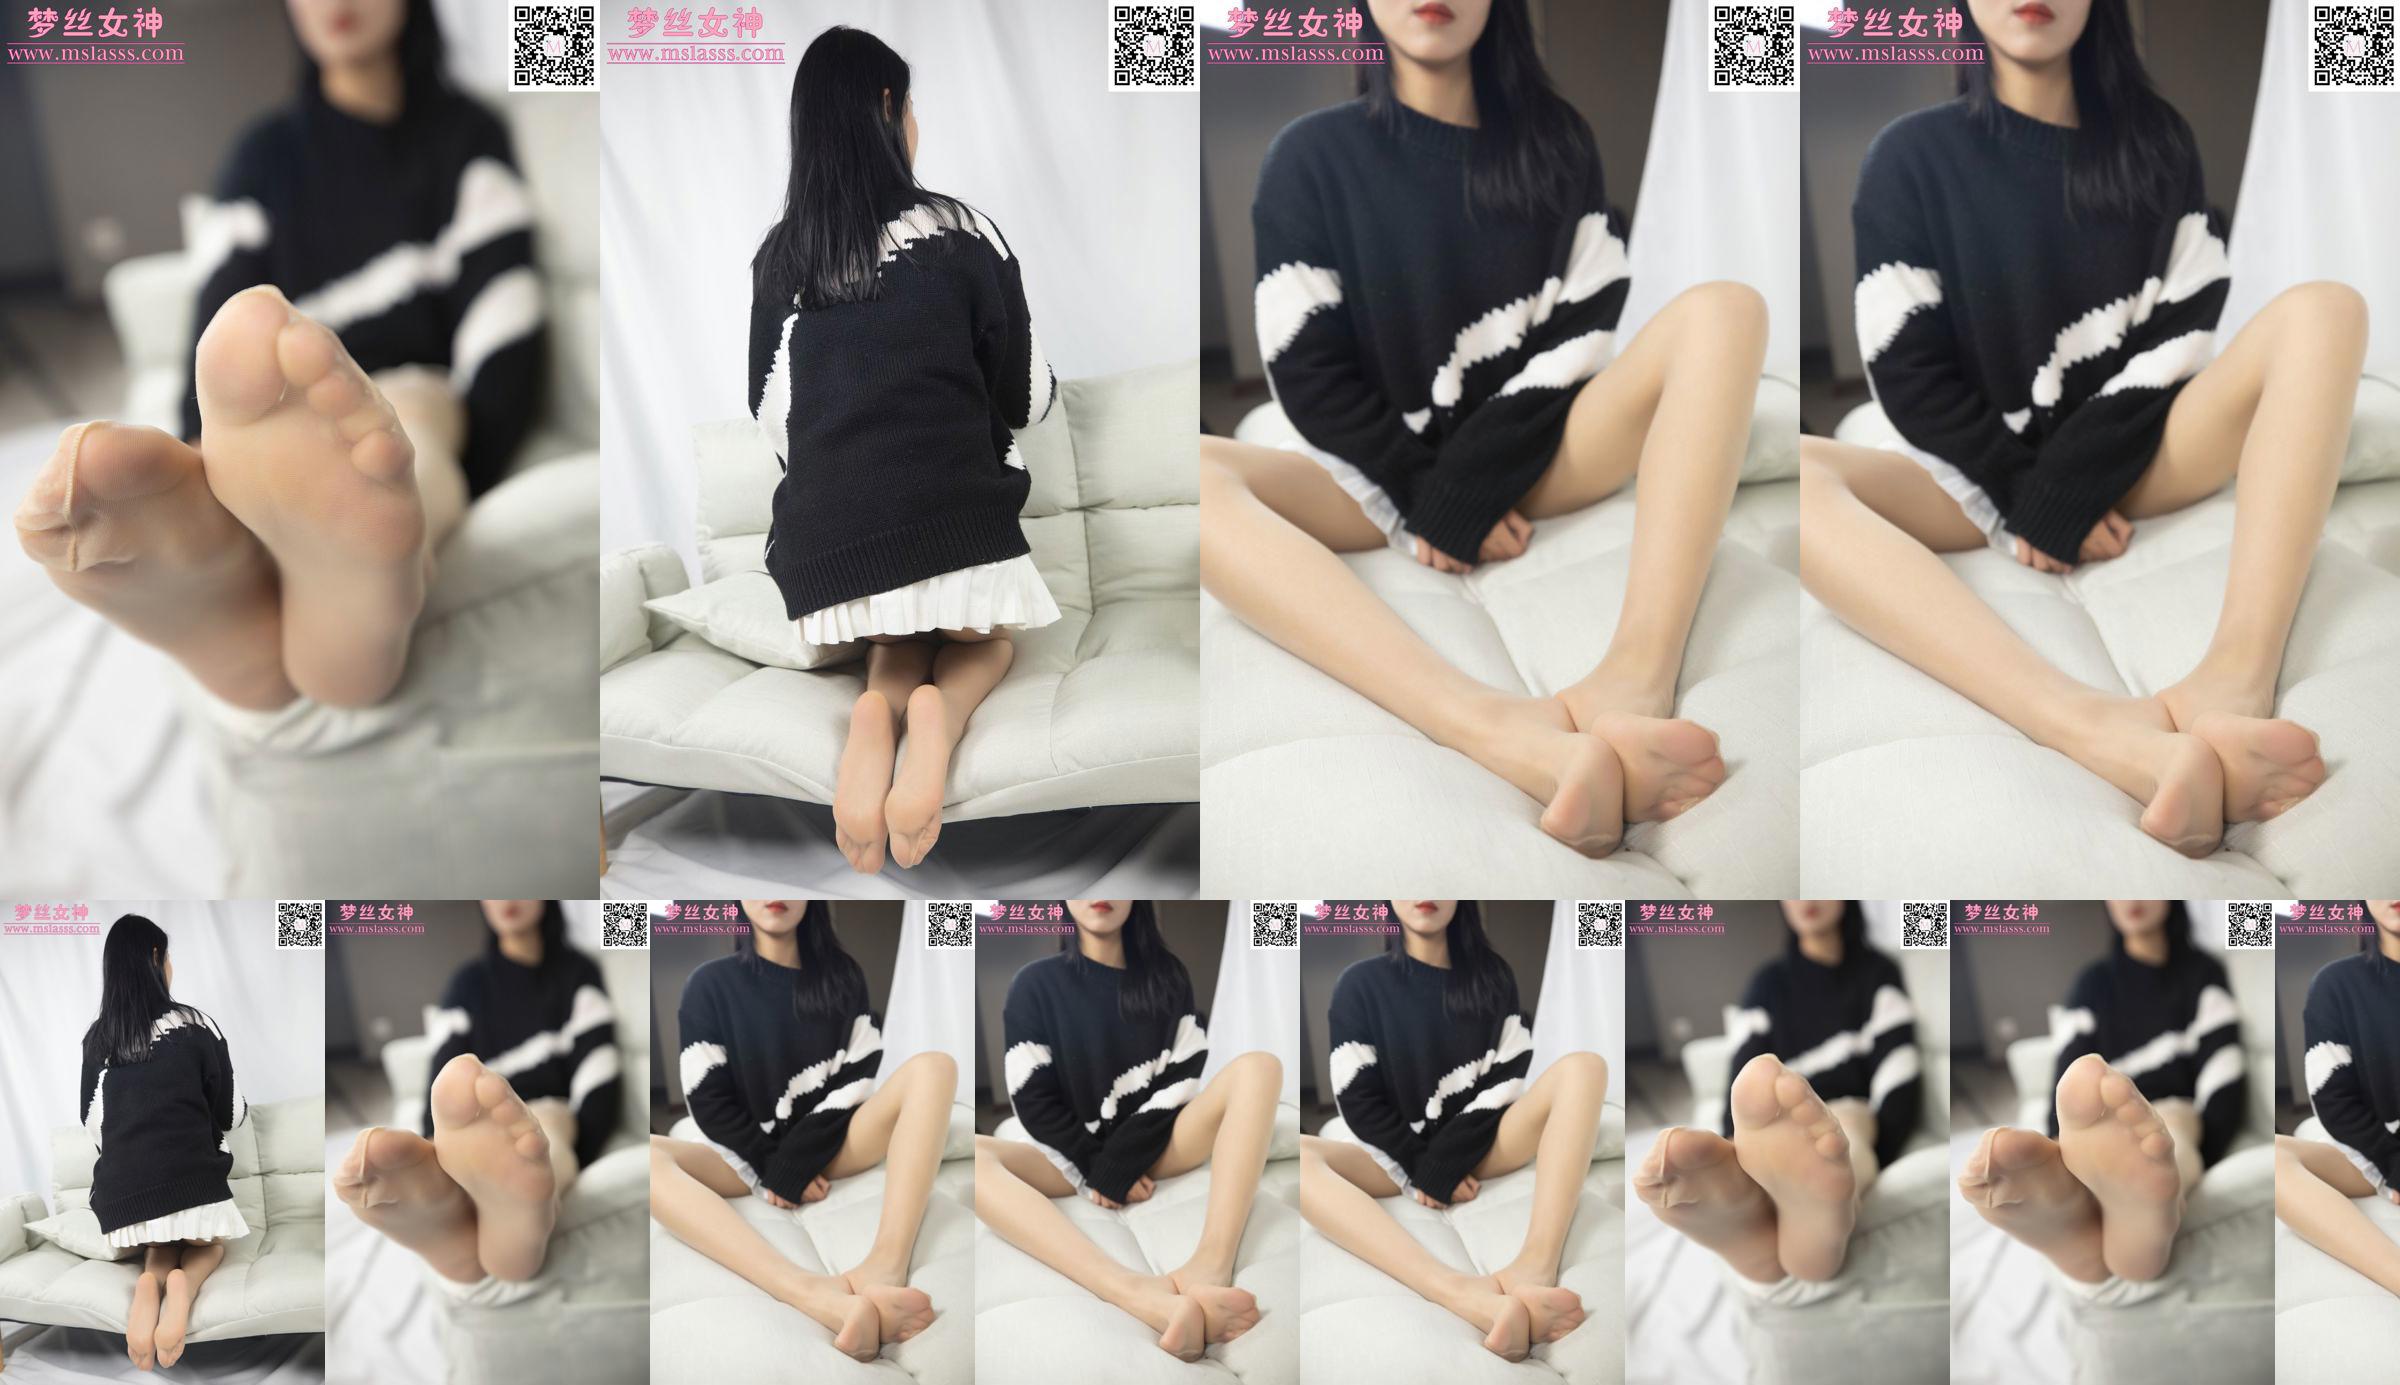 [Goddess of Dreams MSLASS] Áo len của Xiaomu không thể ngăn được đôi chân dài miên man của cô nàng No.8dd639 Trang 2